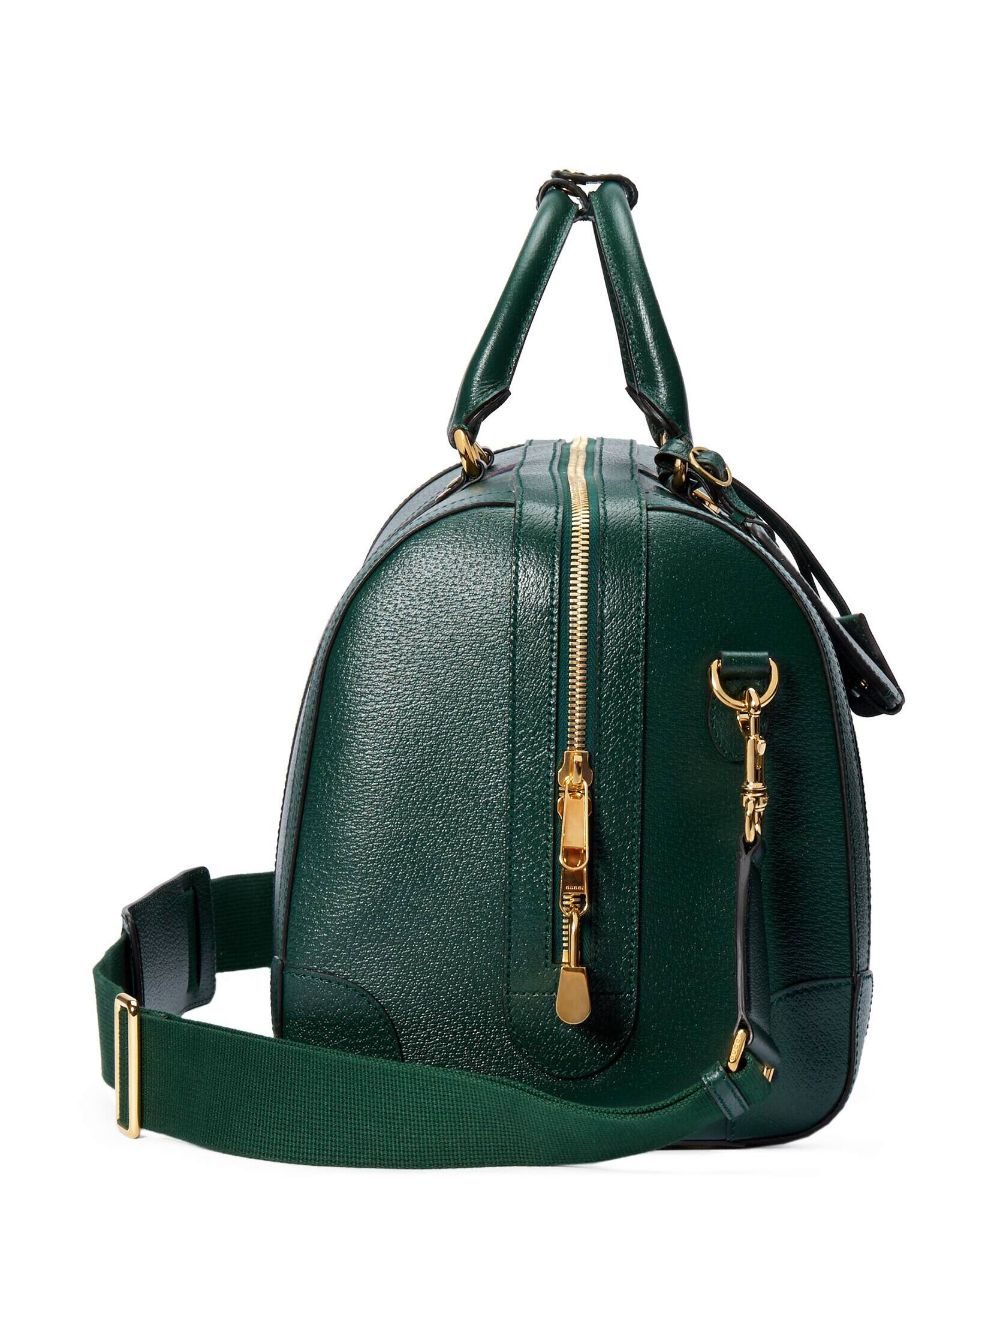 Gucci Small Savoy Leather Duffle Bag - Farfetch